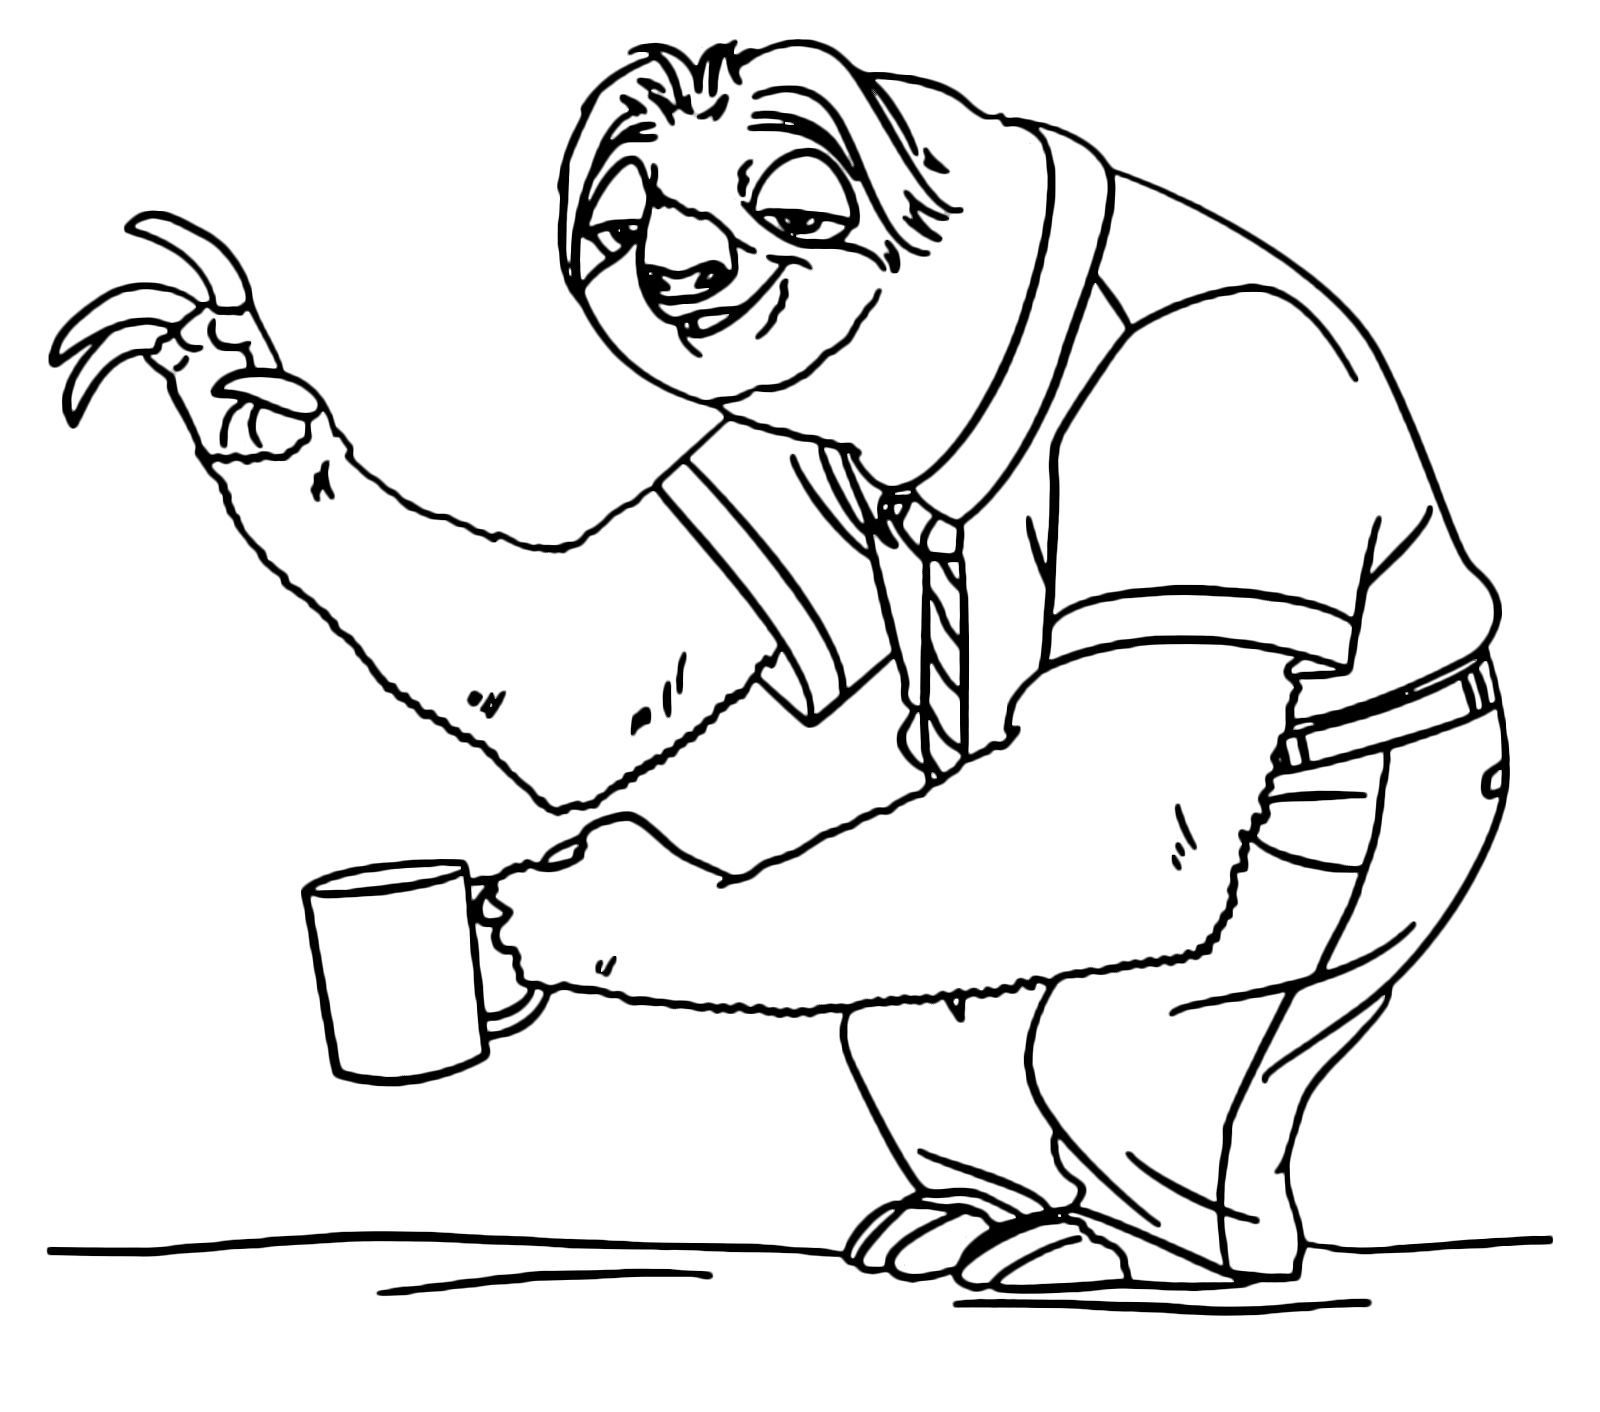 Flash Slothmore saluta con la tazza in mano Pagina da colorare